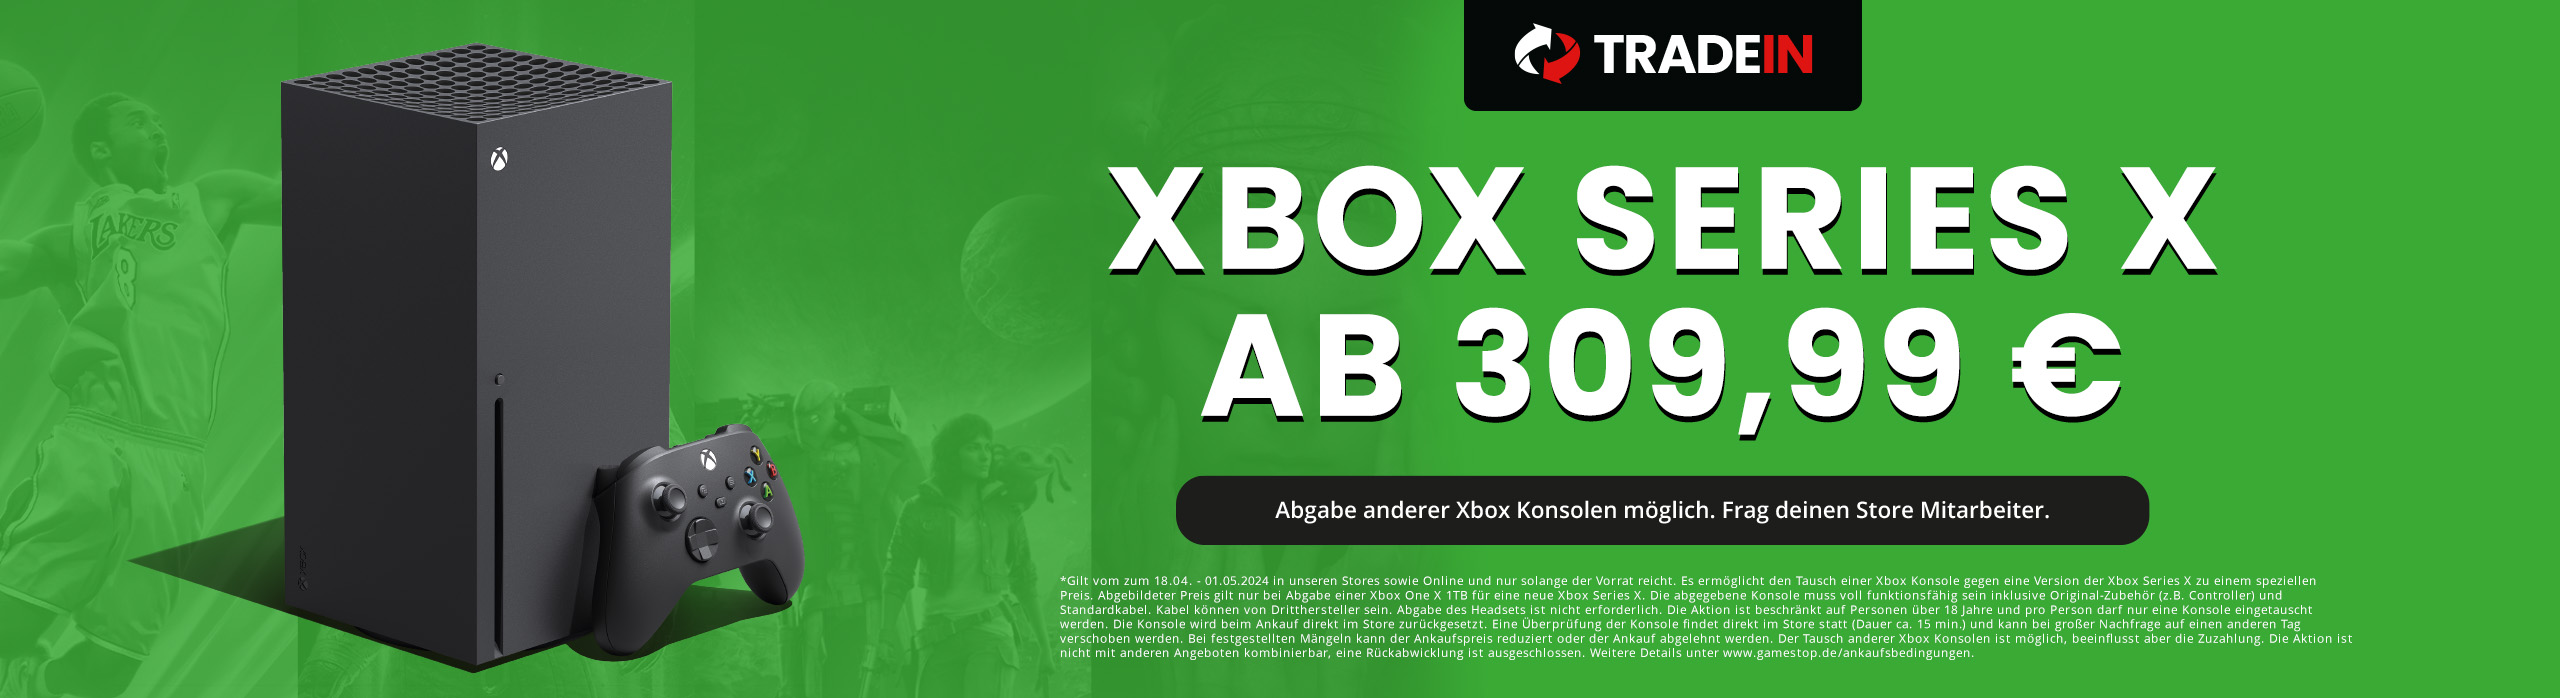 Sichere dir eine Xbox Series X im TradeIn schon ab 309,99 € - Jetzt nur bei GameStop!